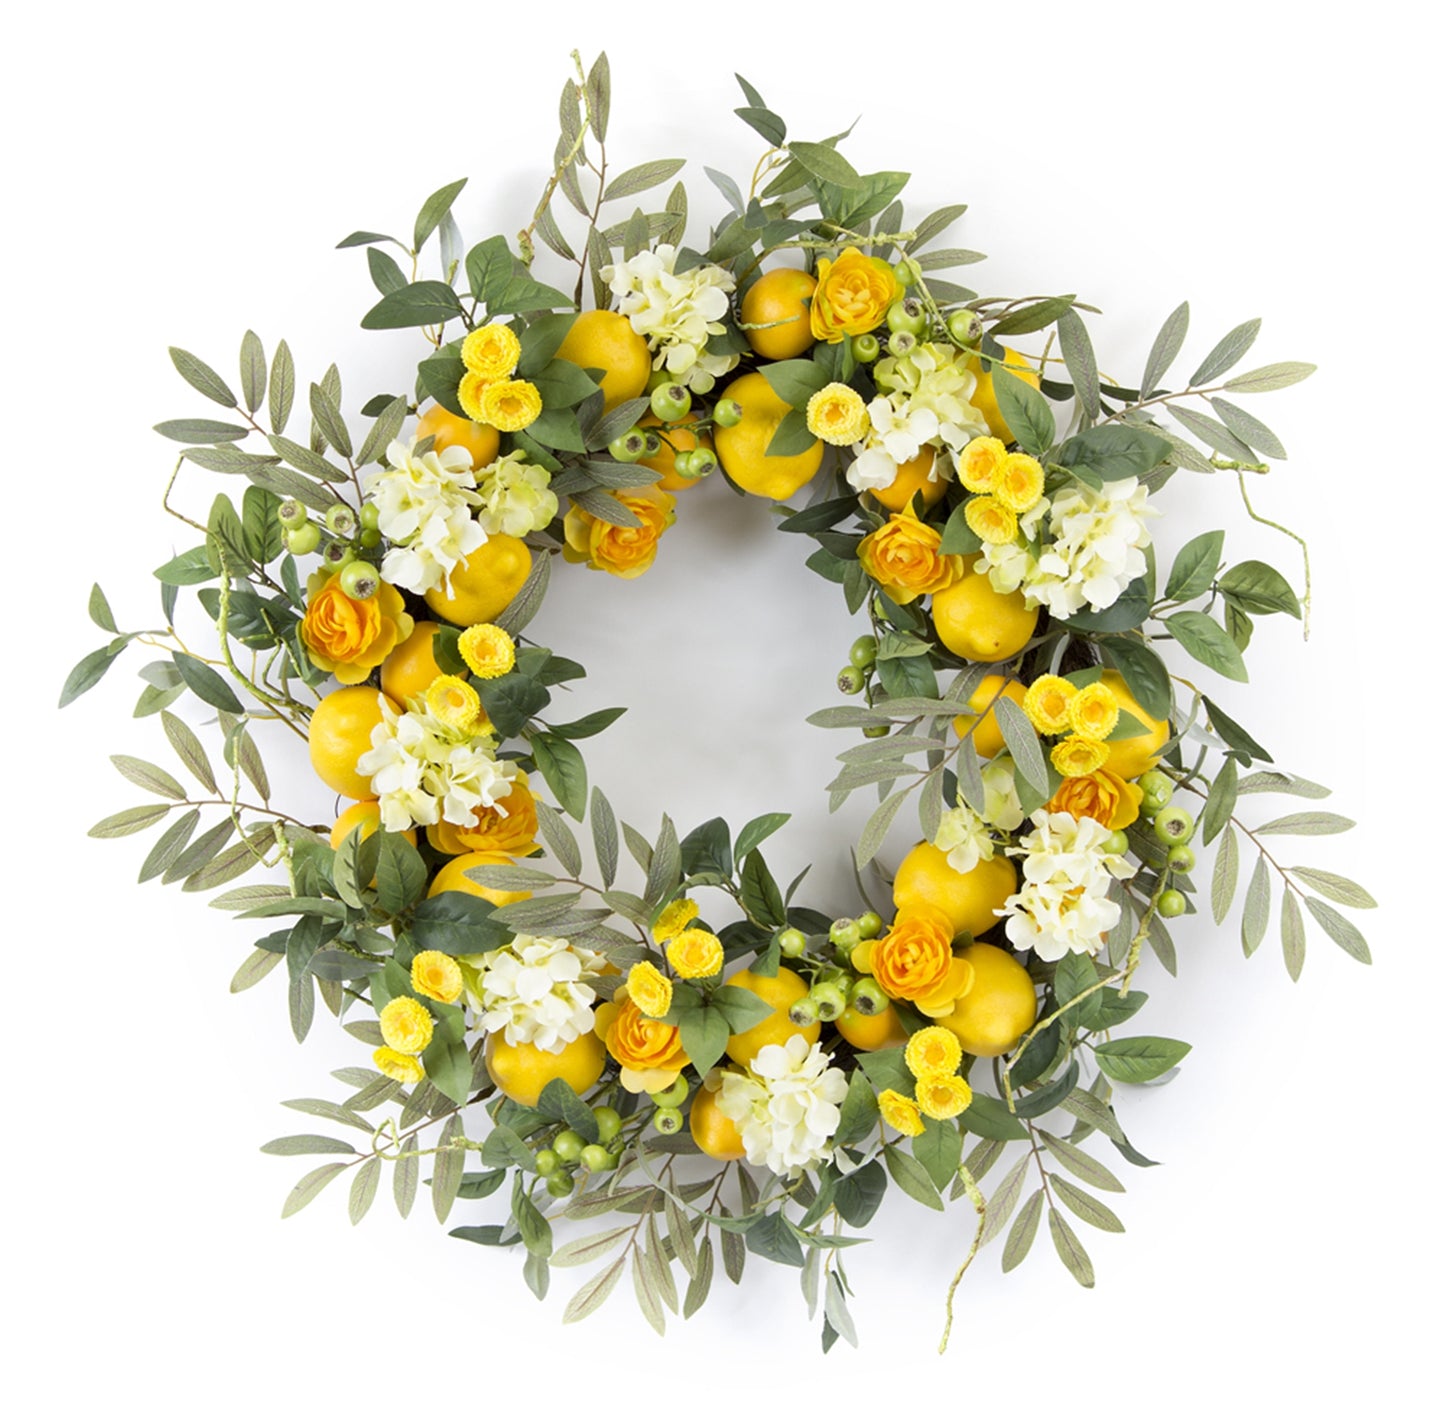 Lemon Floral Wreath 28"D